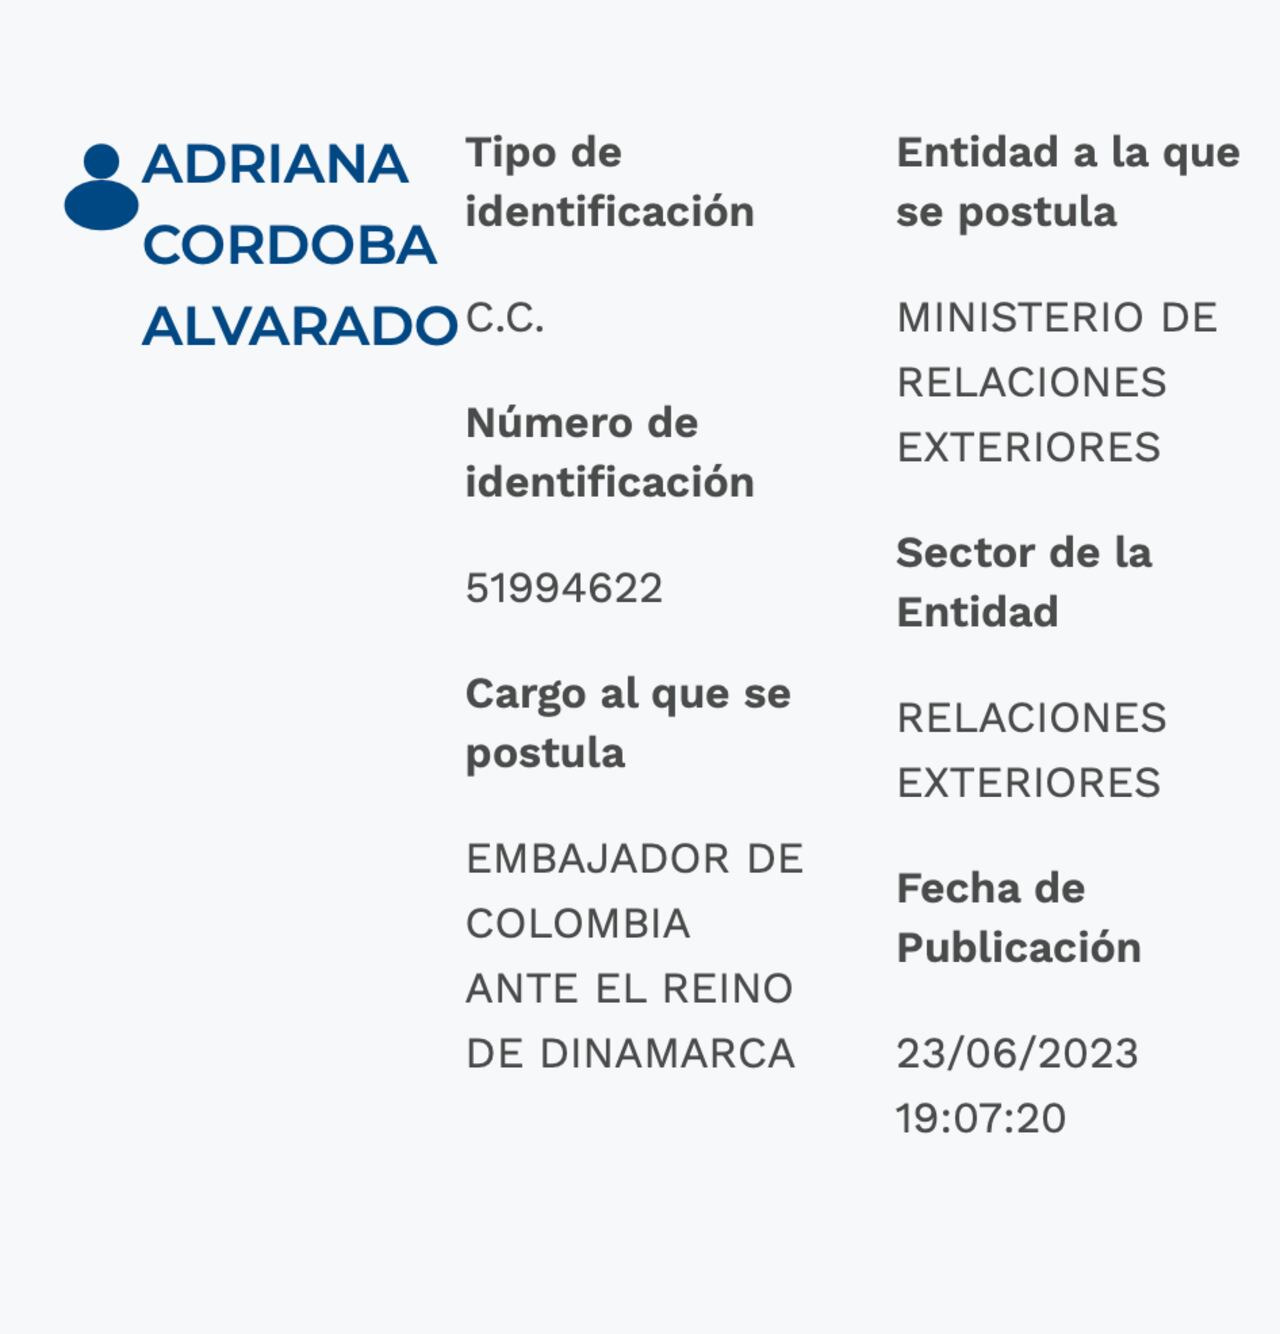 Hoja de vida de Adriana Córdoba se encuentra publicada en Aspirantes de la Presidencia de la República.